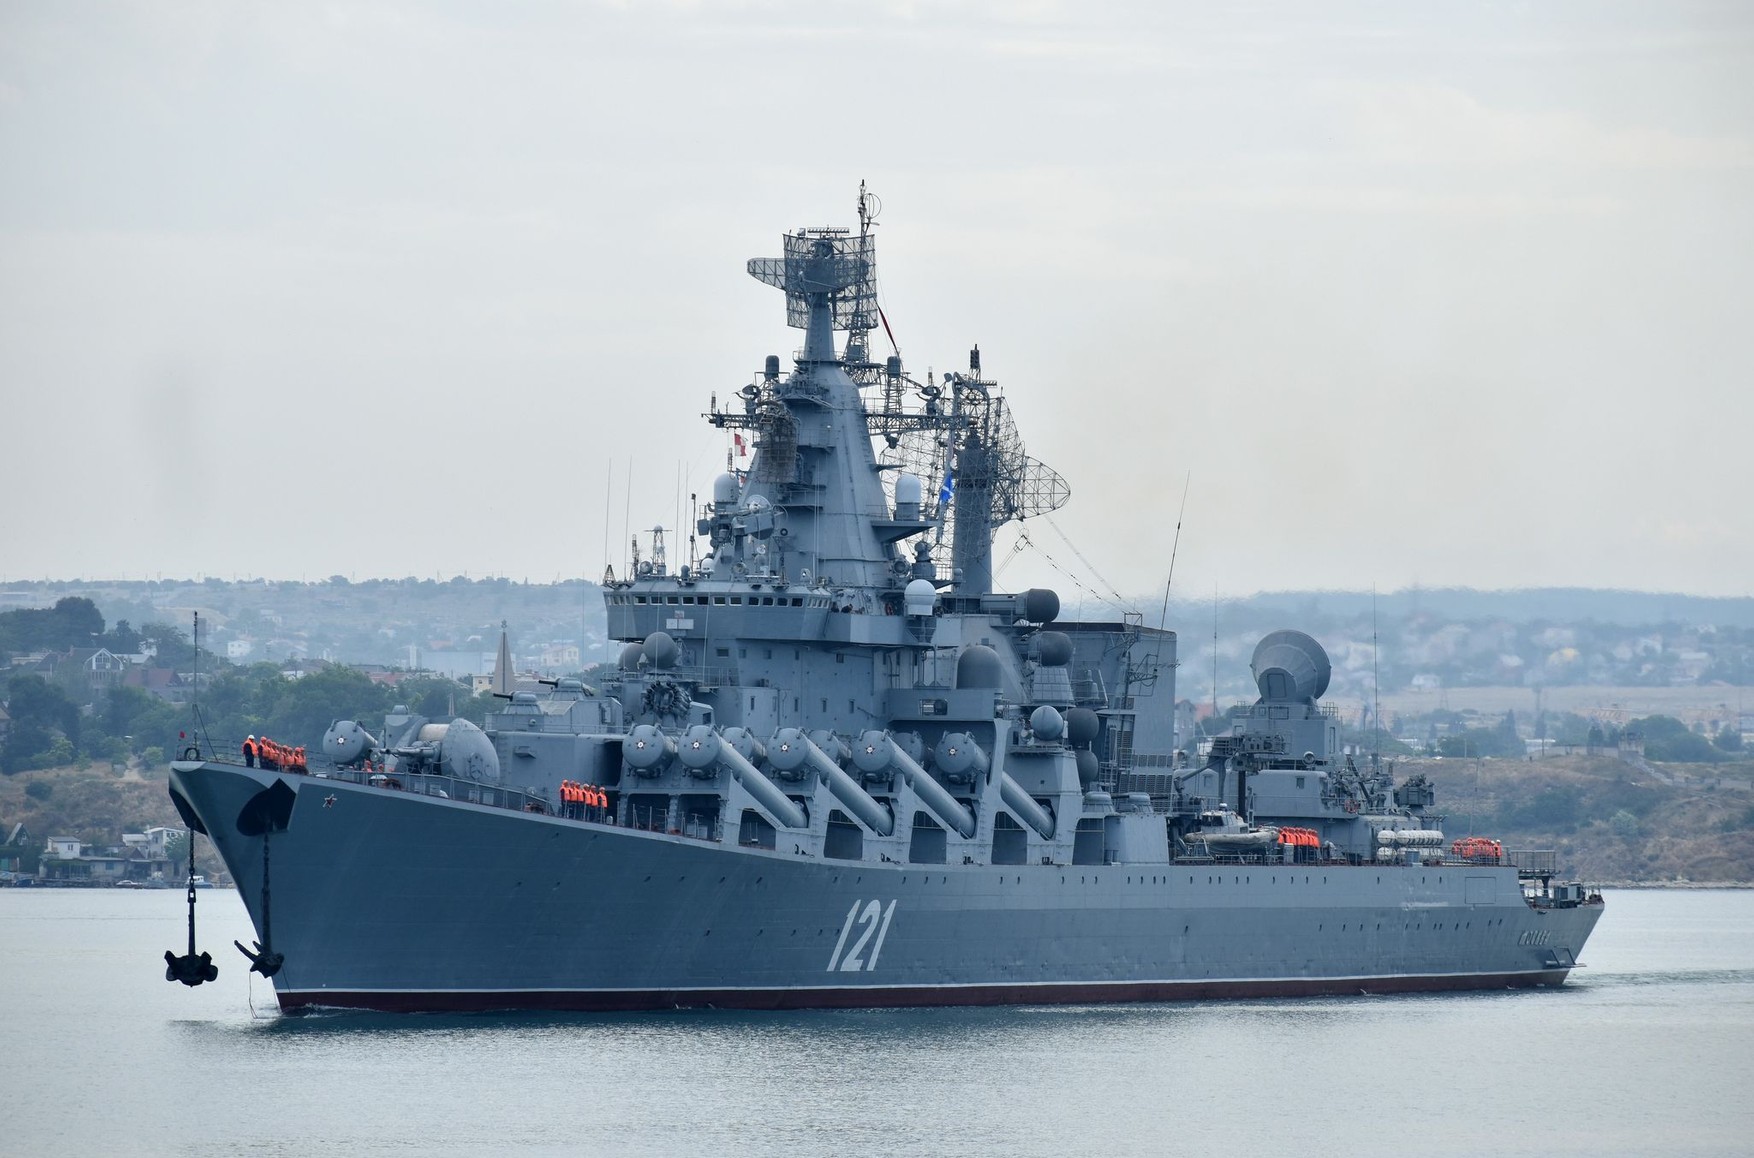 Стало известно имя еще одного контрактника, погибшего на крейсере «Москва»